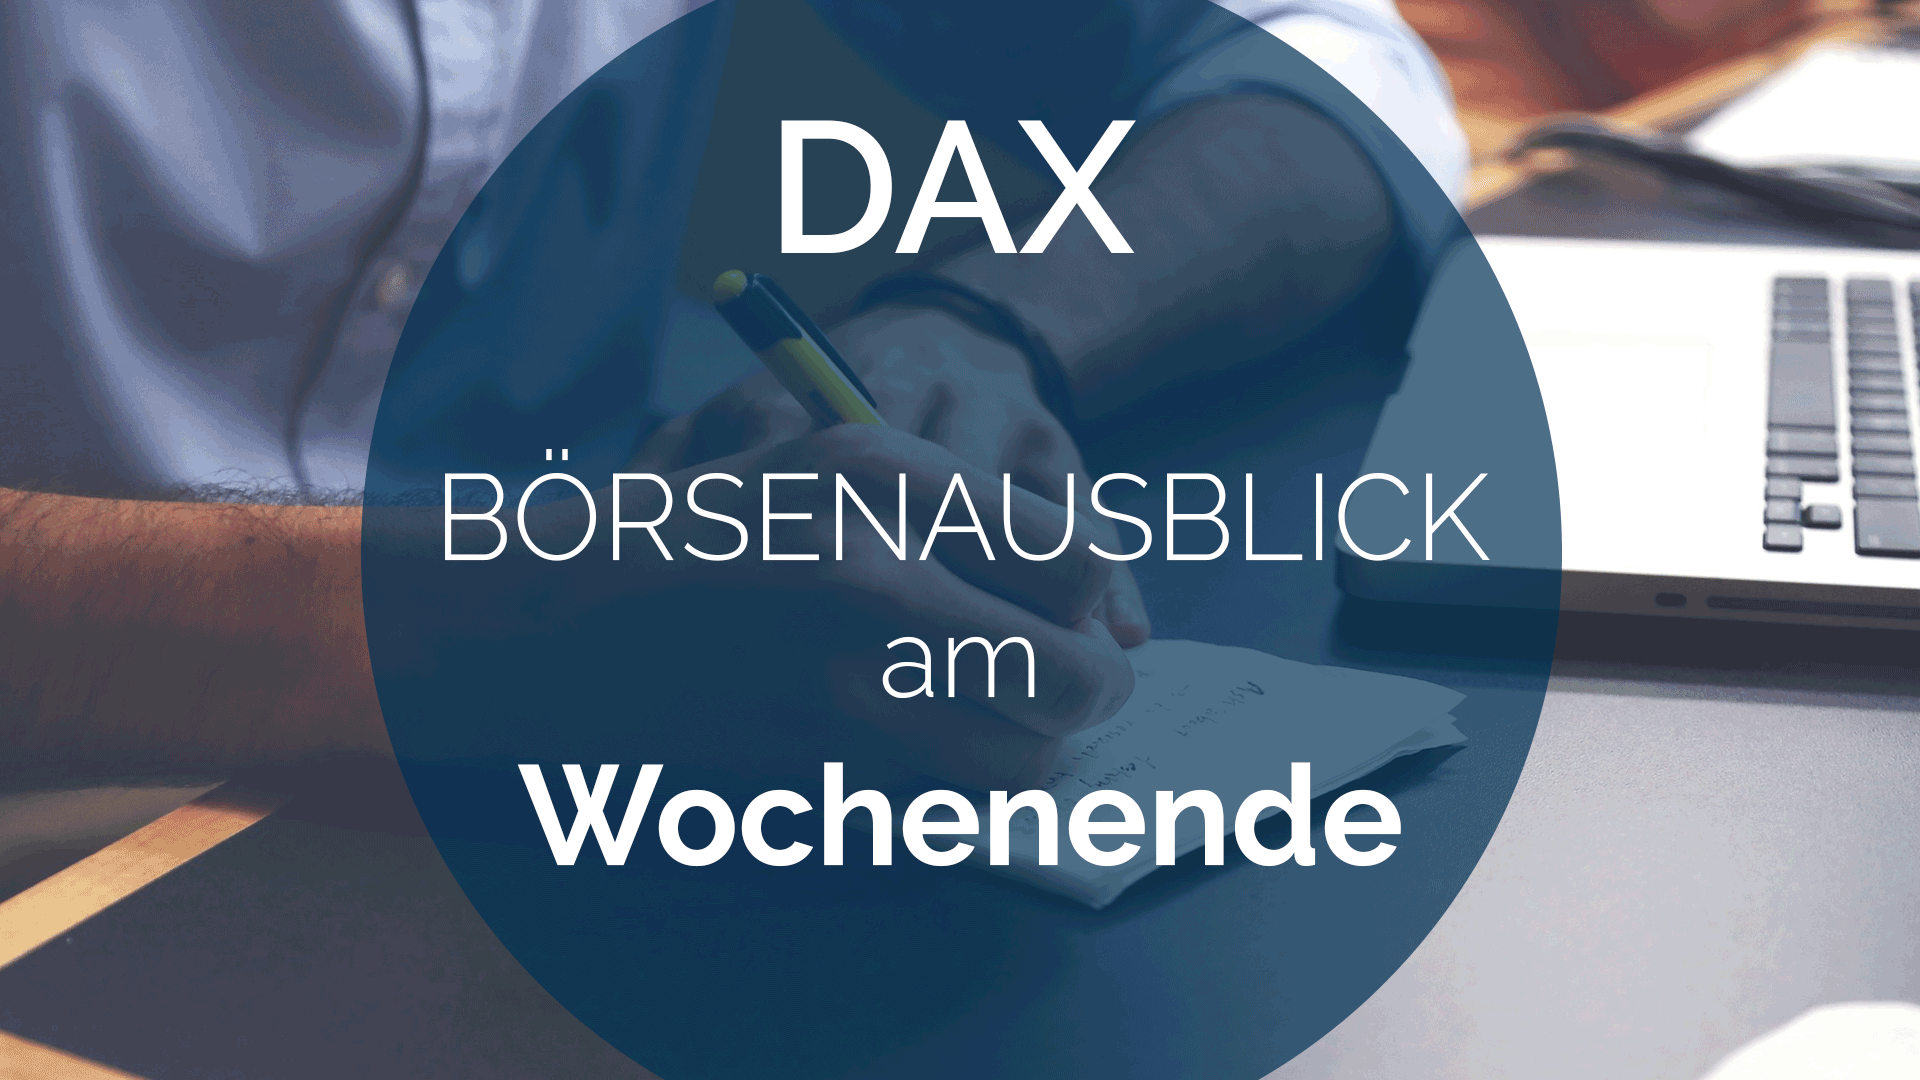 AndreasBernstein WOCHENAUSBLICK DAX